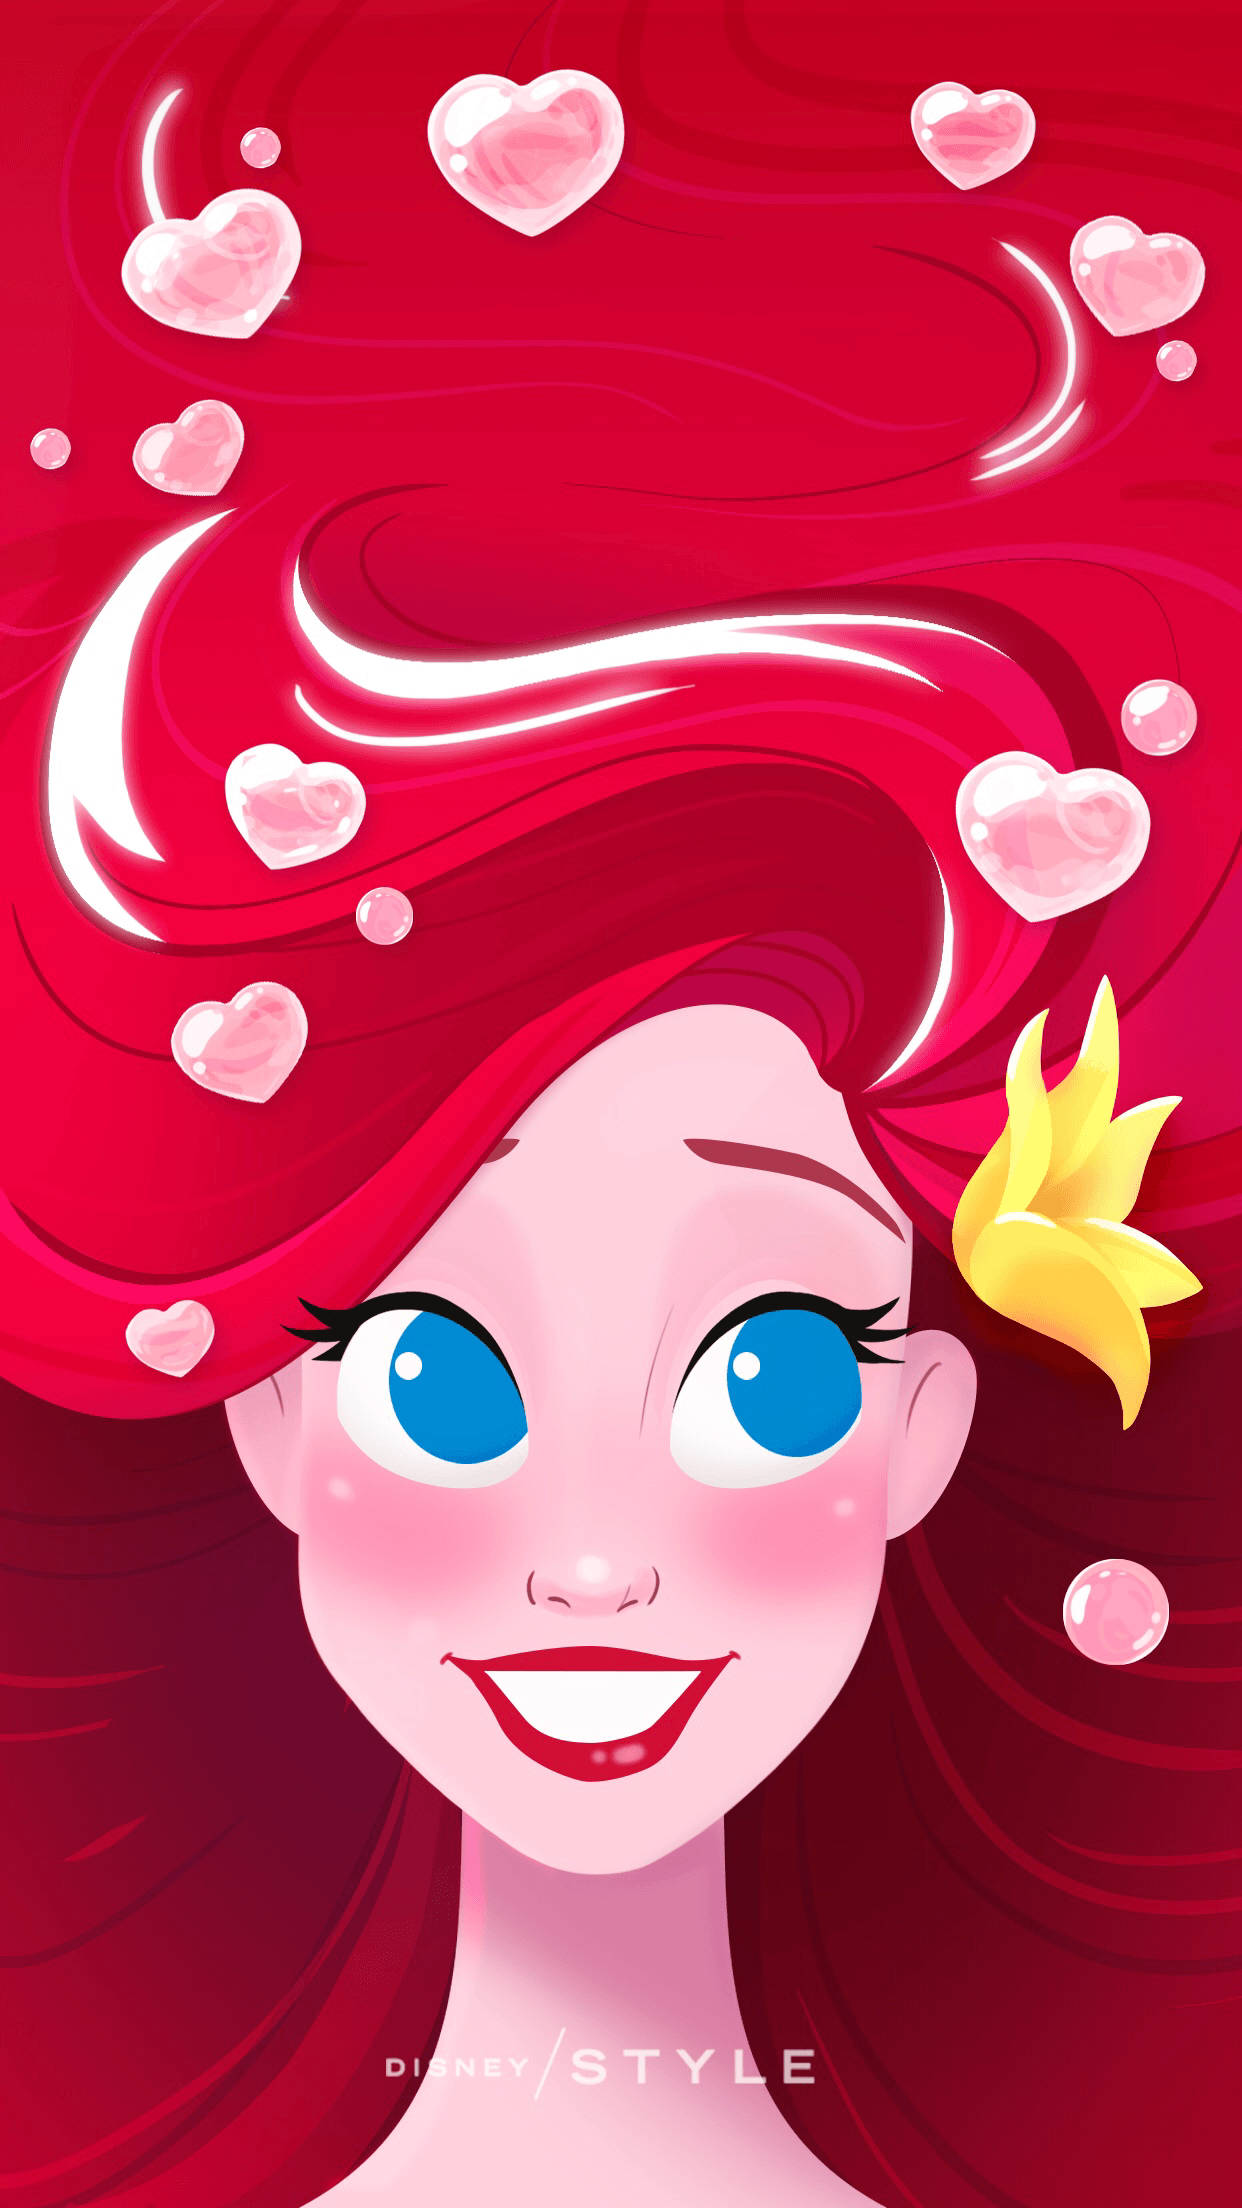 Download Disney Channel Little Mermaid Ariel Wallpaper Wallpapers Com